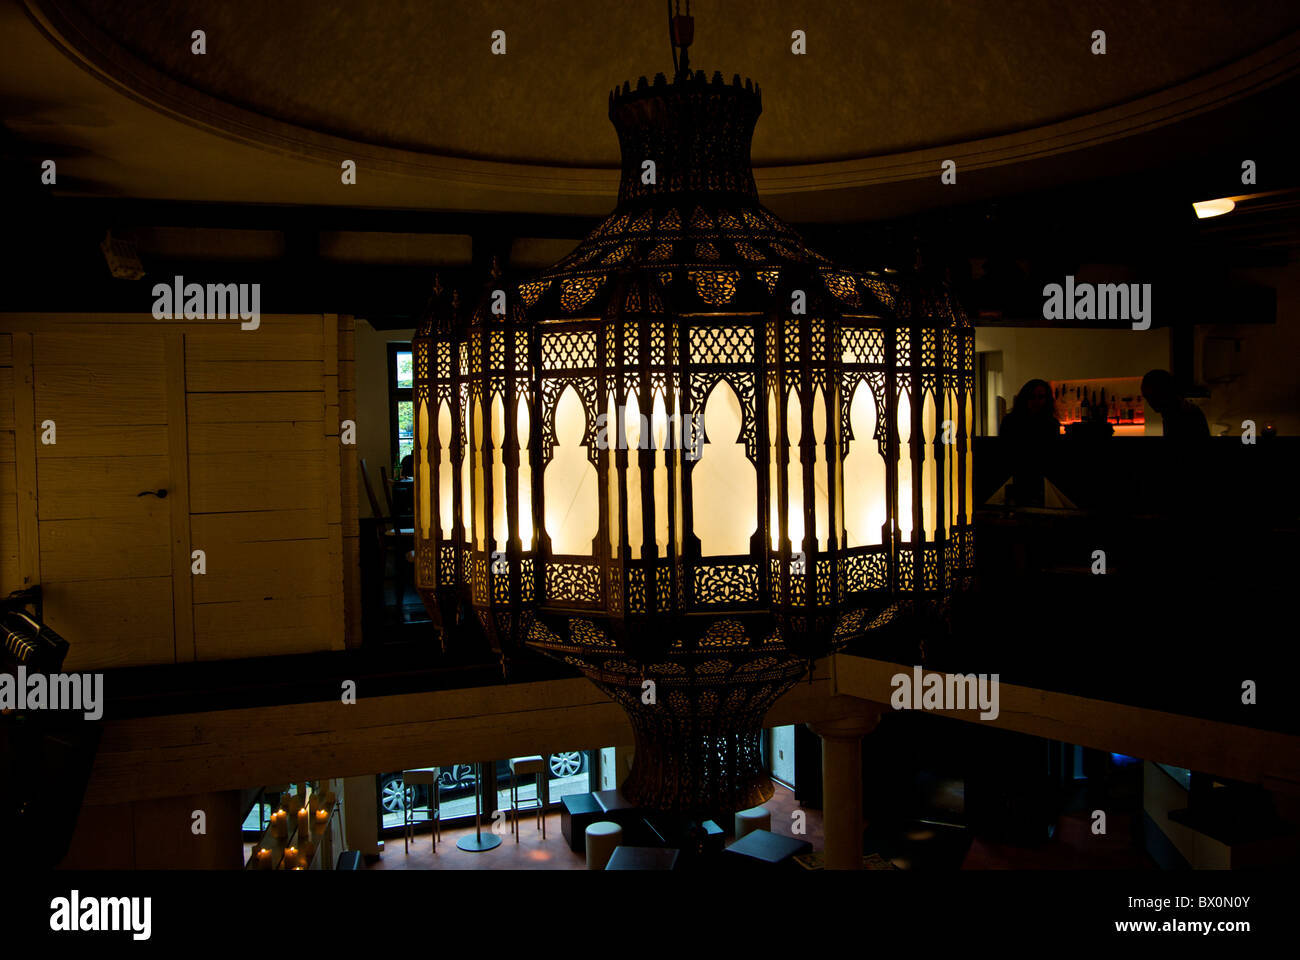 Riesige reich verzierten marokkanischen Stil Glas Kronleuchter Deckenleuchte  hängen in Atlantis Restaurant und Night Club Basel Schweiz Stockfotografie  - Alamy